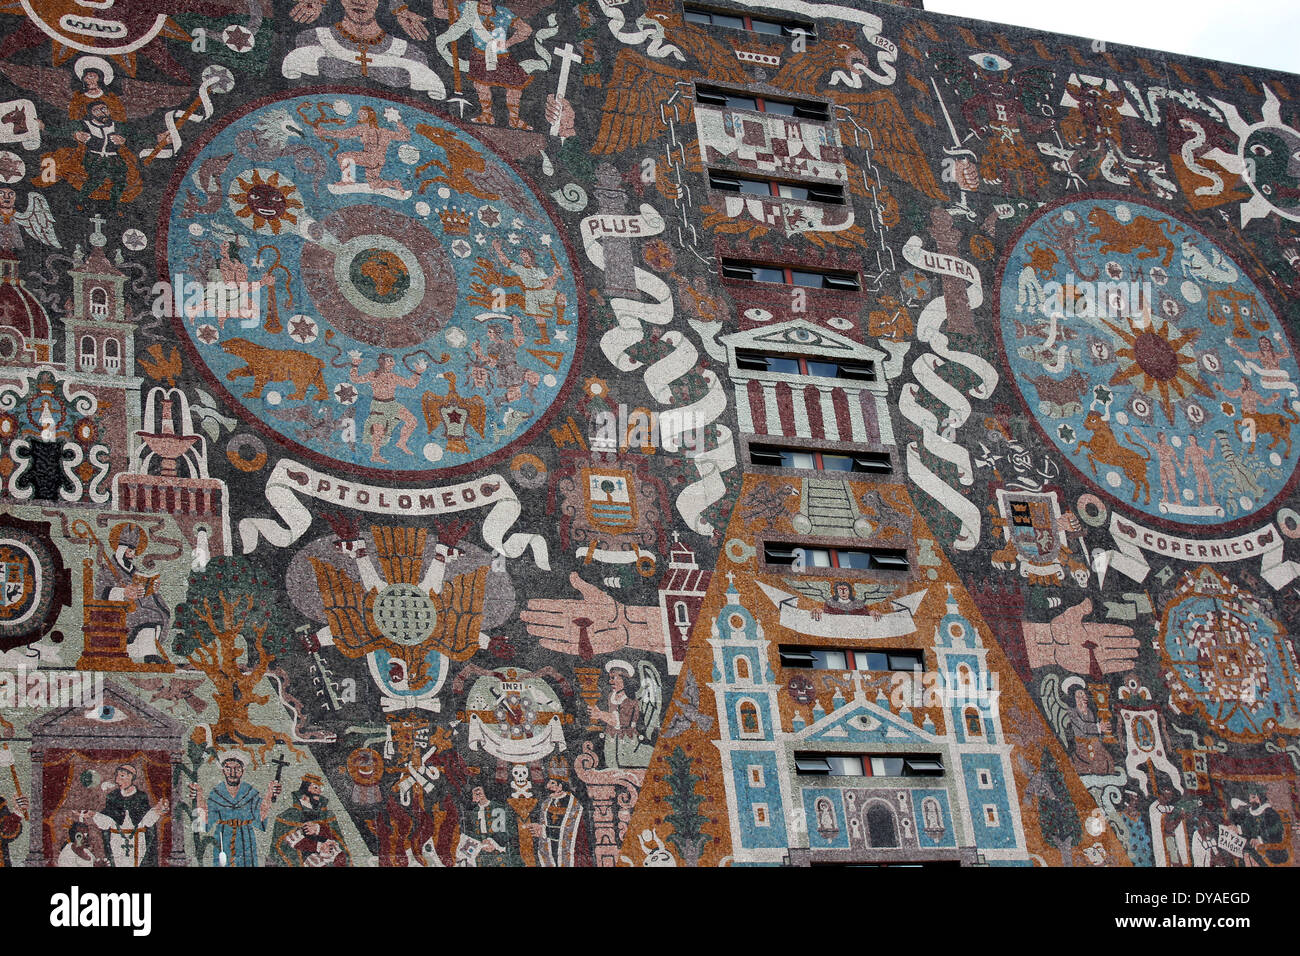 Peinture murale sur la Rectoria de l'UNAM, Mexico City - Site du patrimoine mondial Banque D'Images